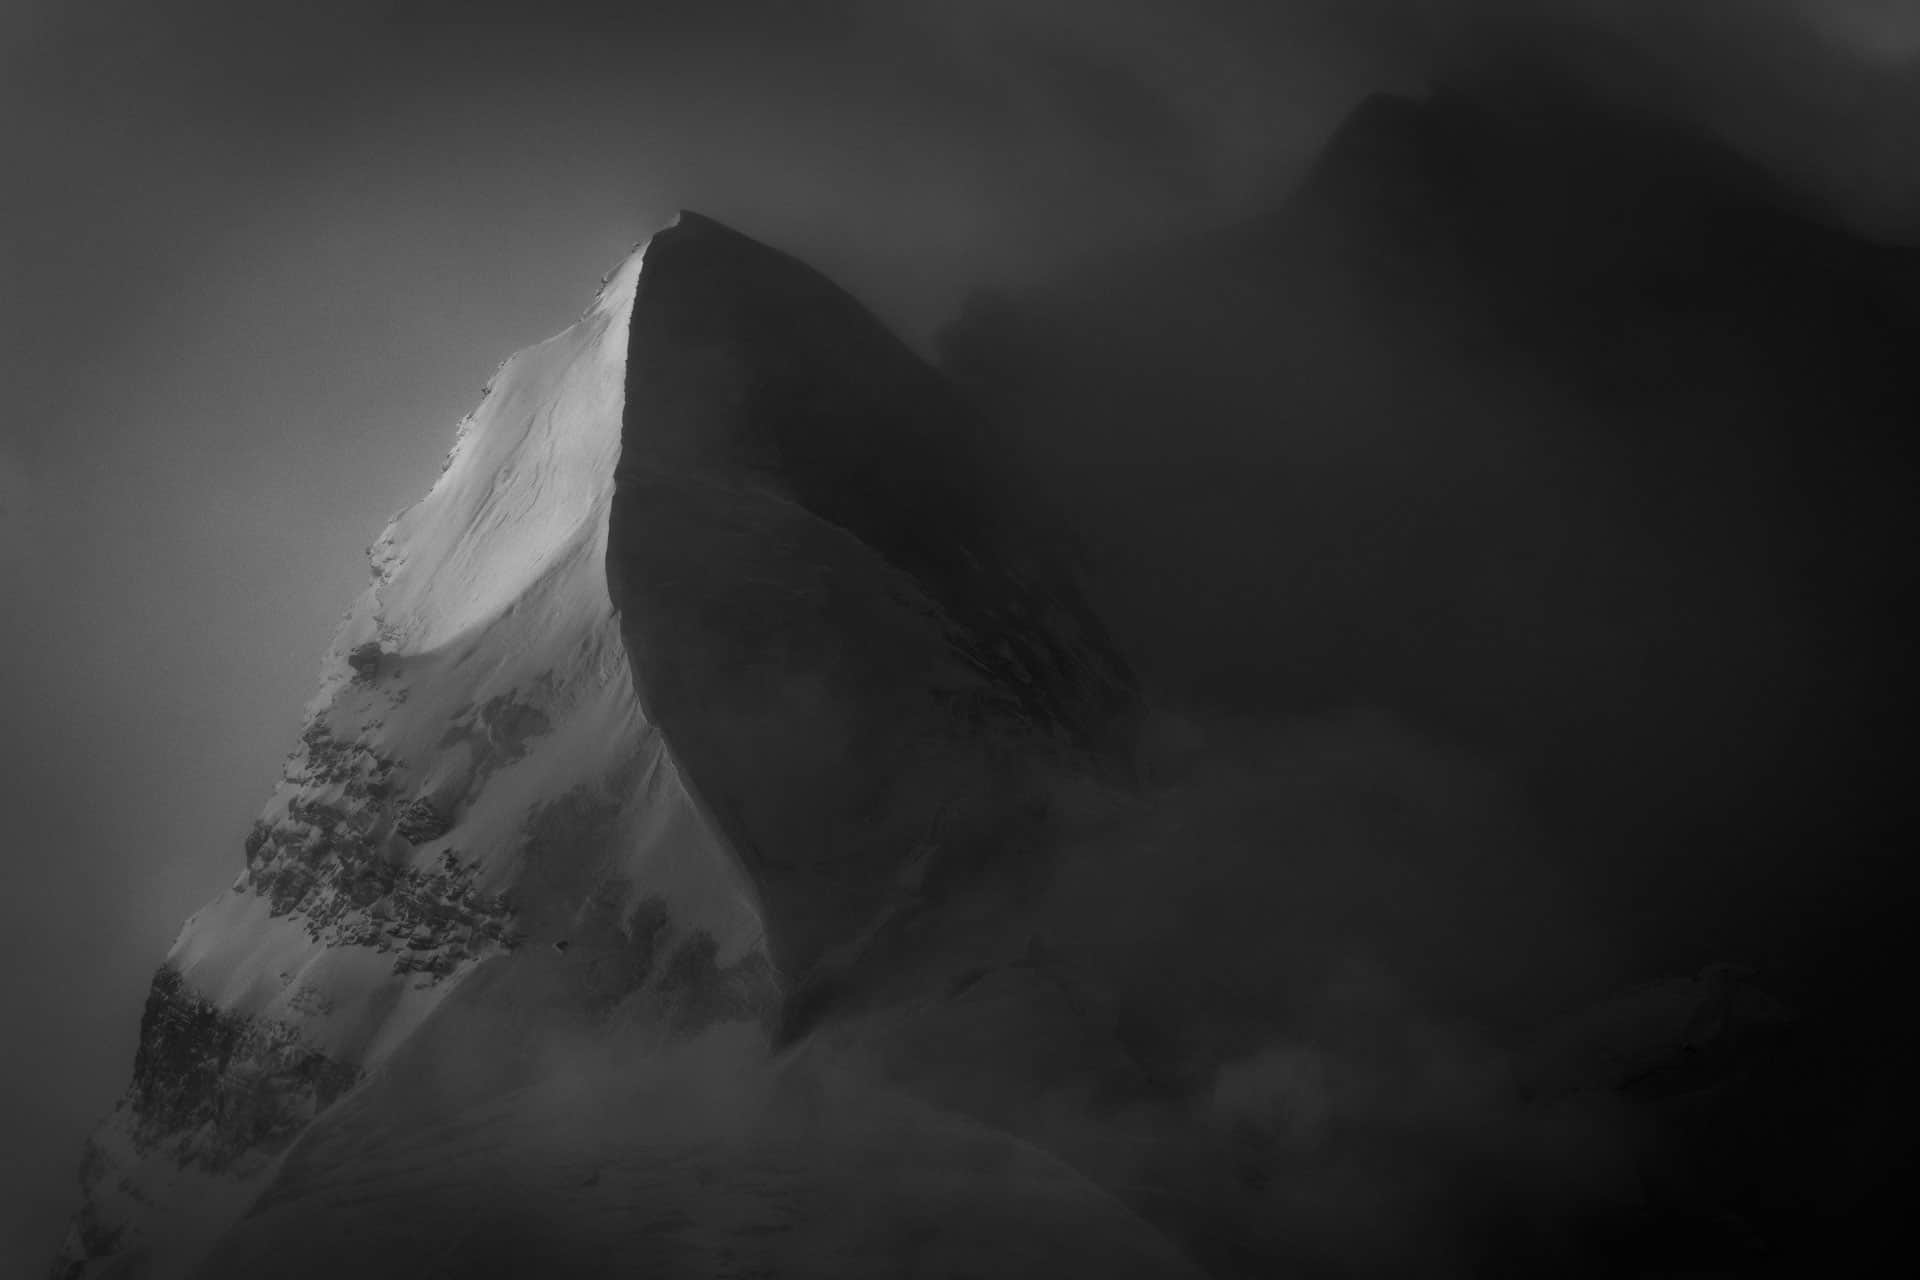 Sommet enneigé dans une mer de nuage - neige et soleil massif montagneux en noir et blanc - Aiguille du Croissant -  Grand Combin de Verbier